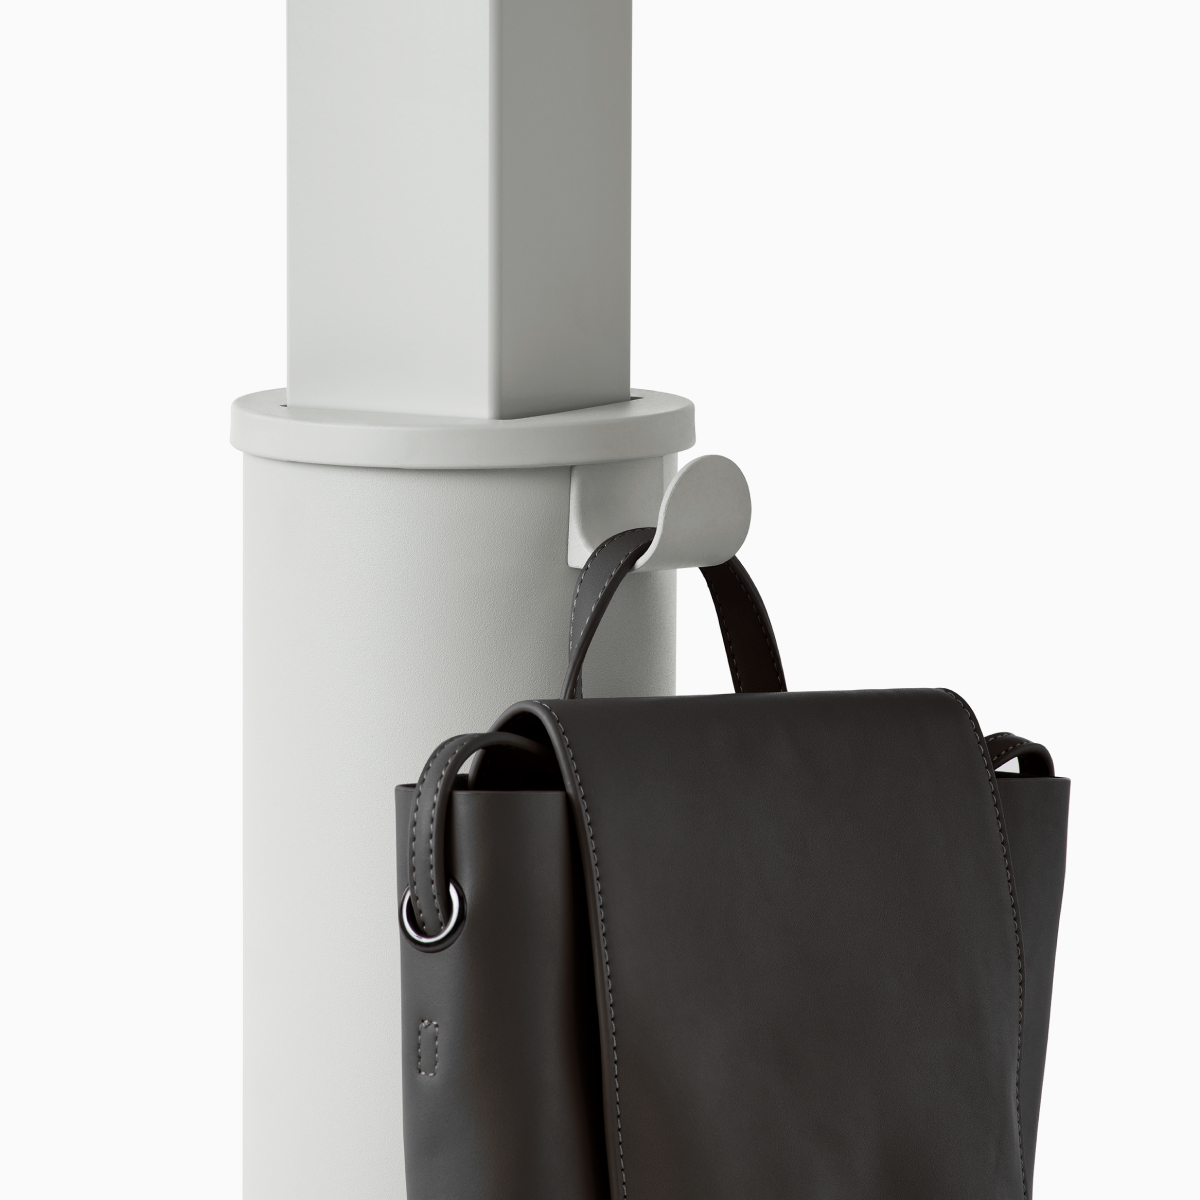 Detalle de una columna de mesa Sit-to-Stand OE1 gris con un bolso negro que cuelga del gancho para bolsos y carteras.